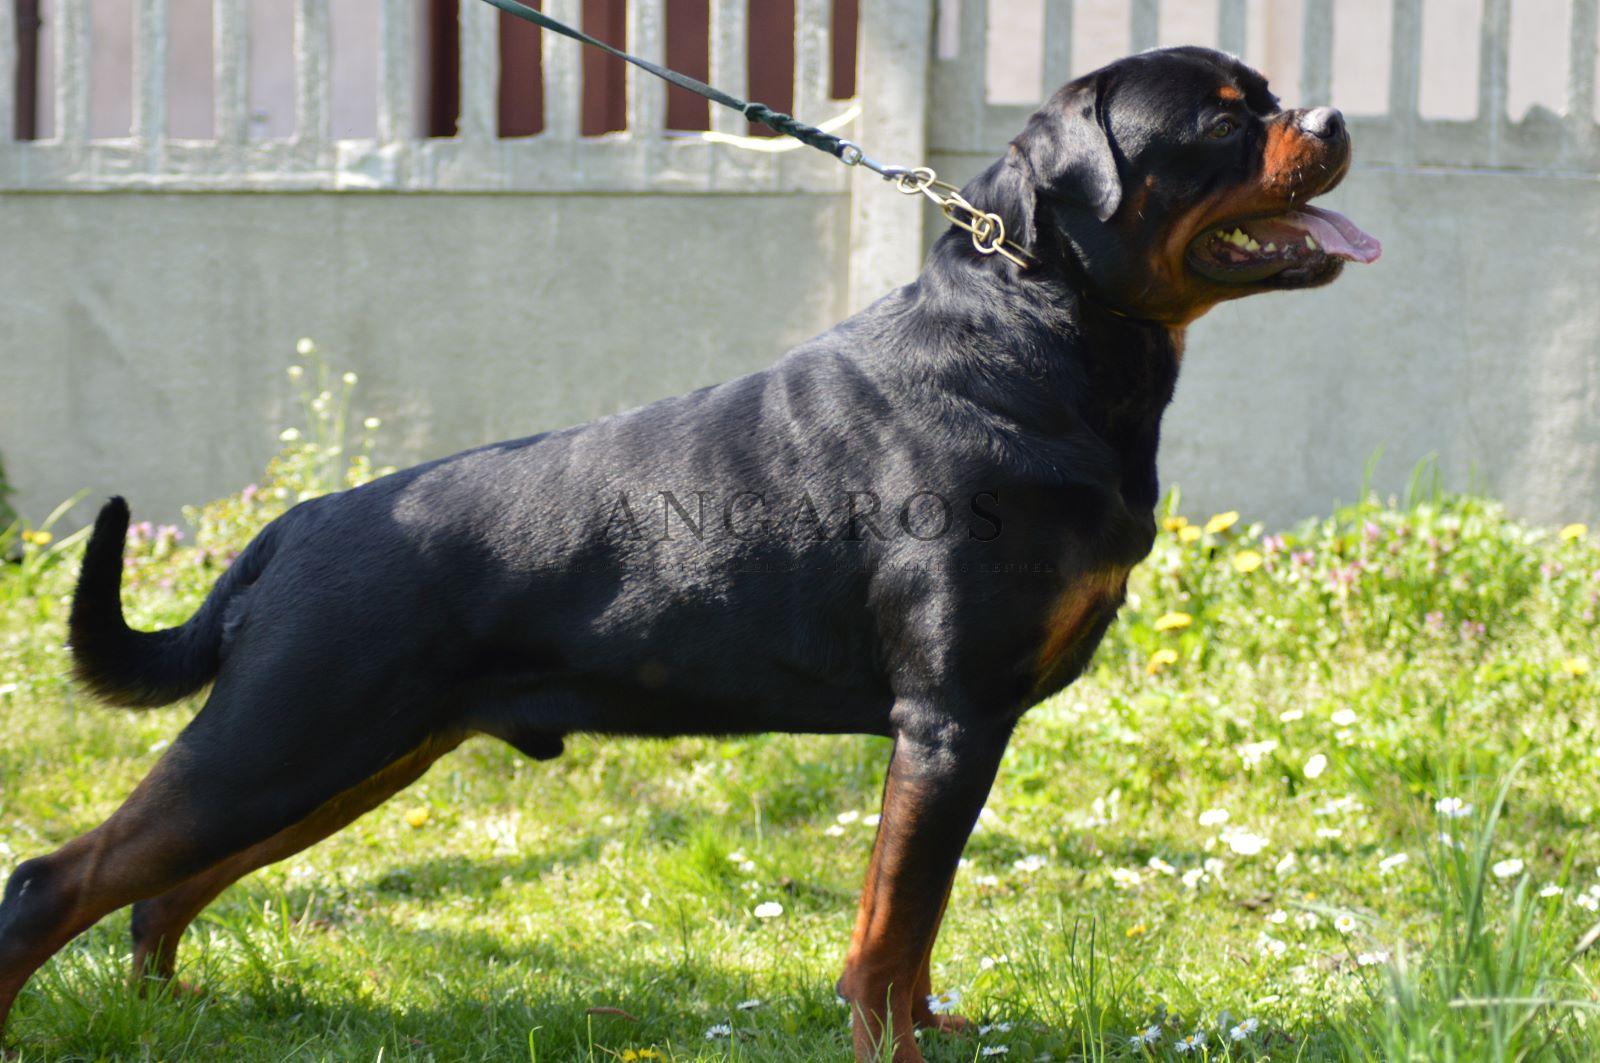 Kolejny ANGAROS całkowicie wolny od chorób genetycznych trapiących Rottweilery! | Rottweiler - Hodowla Rottweilerów Angaros - Rottweilers - Rottweilery